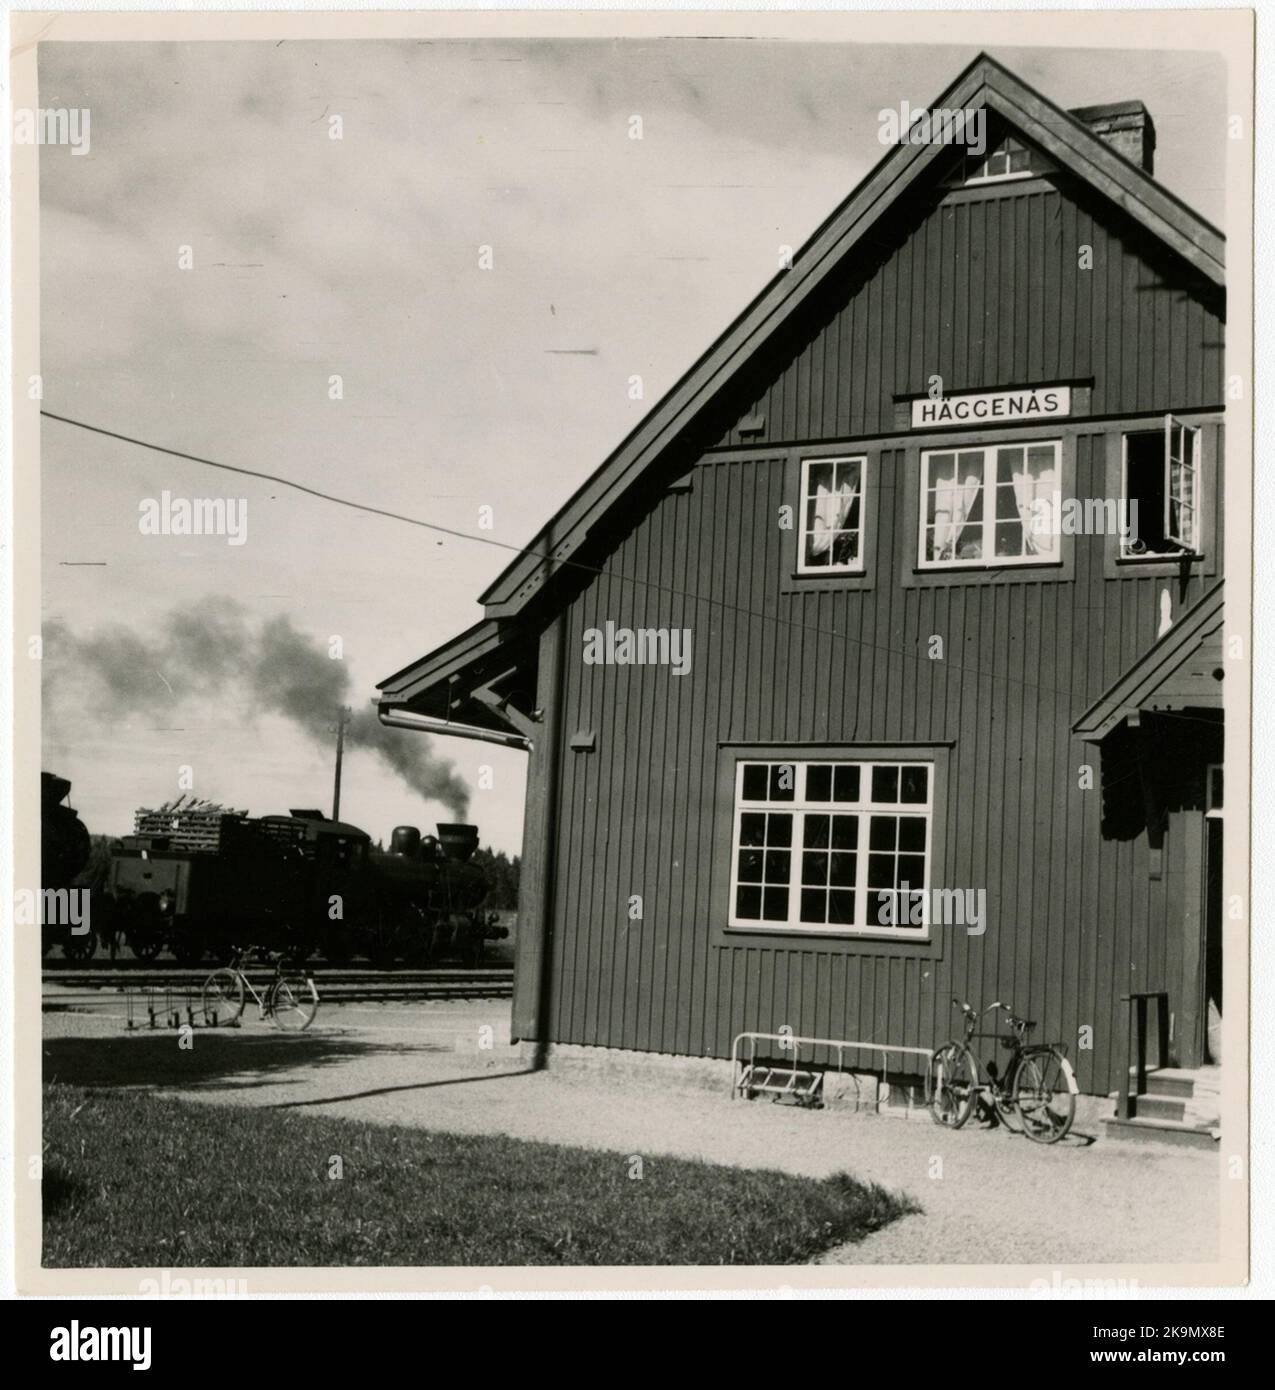 Bahnhof Häggenås mit einer hölzernen Lokomotive, die 1910 stationiert war. Eineinhalb-stöckiges Stationshaus aus Holz. Die Expeditionsräume wurden 1947 modrnisiert. Schalten mit Steuersäcken, aber die Gänge sind nicht zentral wiederaufzunehmen Stockfoto